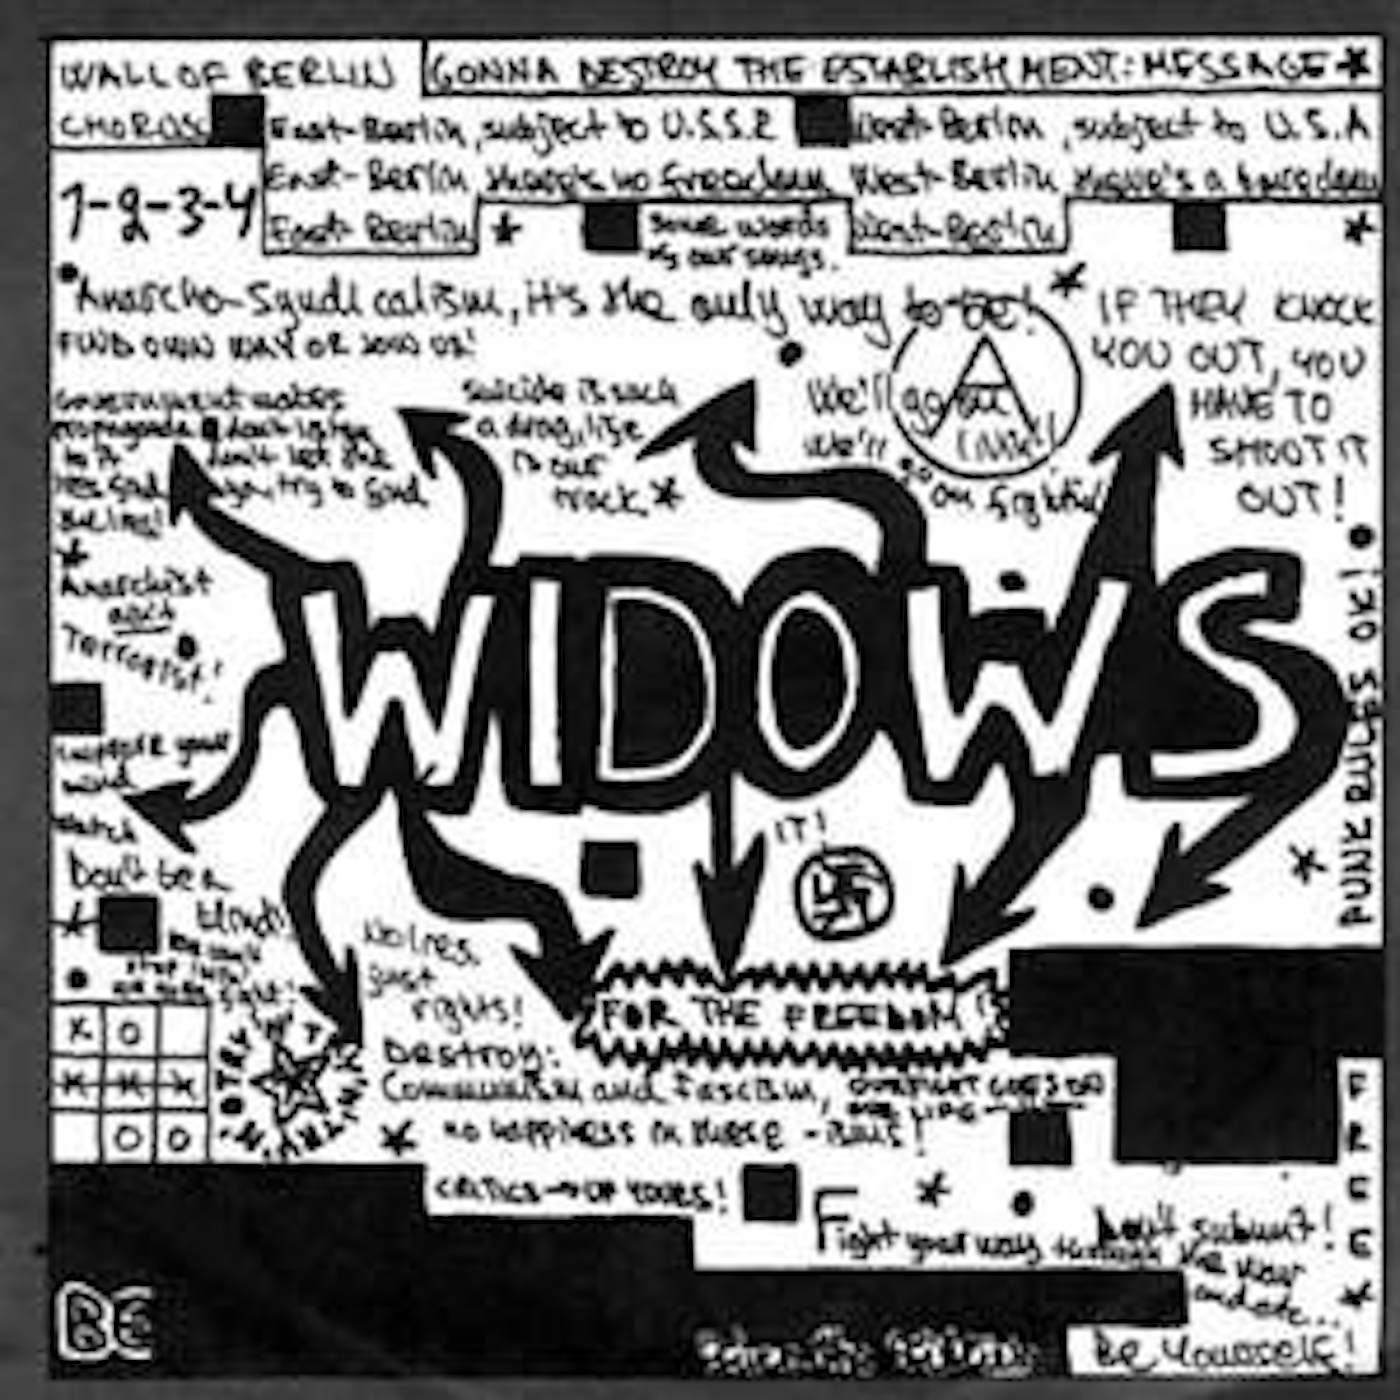 Widows WALL OF BERLIN (Vinyl)